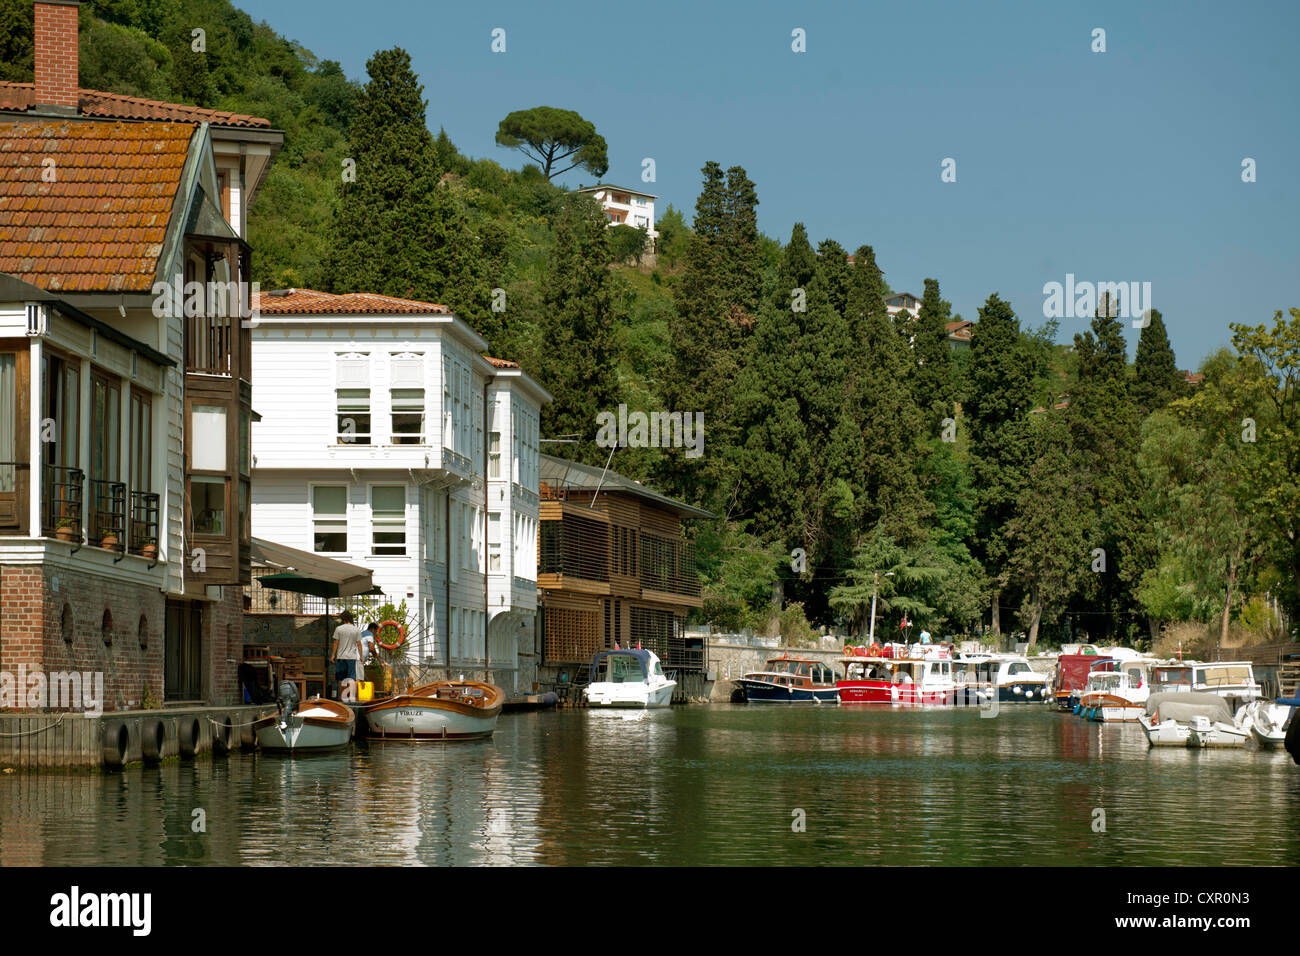 Türkei, Istanbul, Beykoz, Häuser am Kanal Göksu Deresi Stock Photo